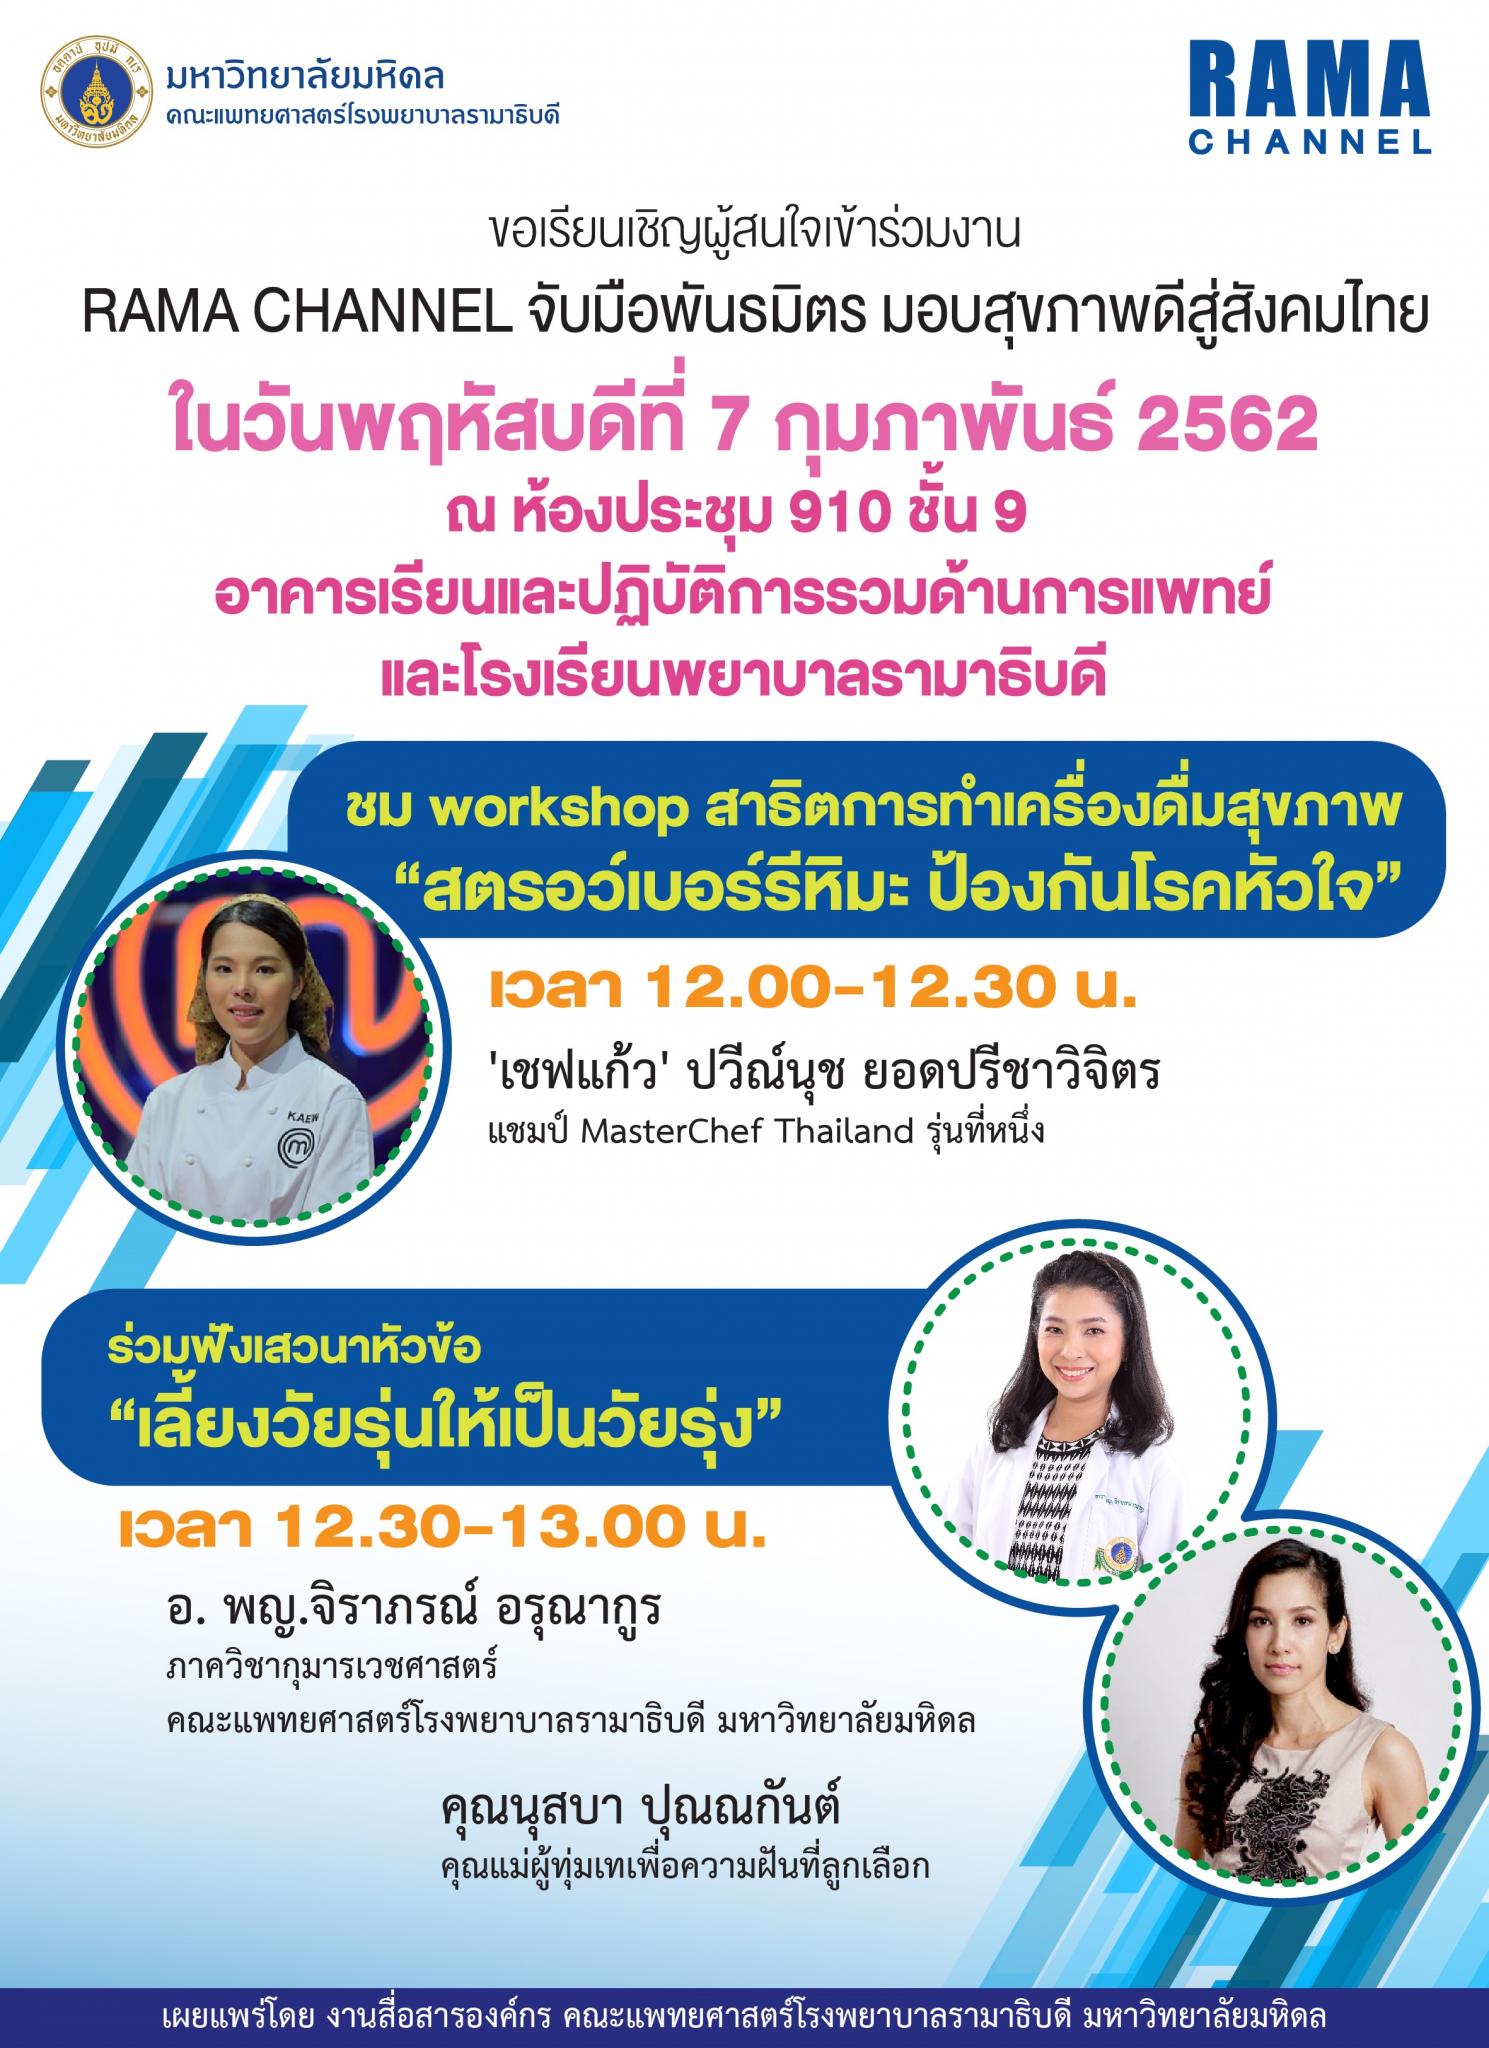 ขอเรียนเชิญผู้สนใจเข้าร่วมงาน RAMA CHANNEL จับมือพันธมิตร มอบสุขภาพดีสู่สังคมไทย